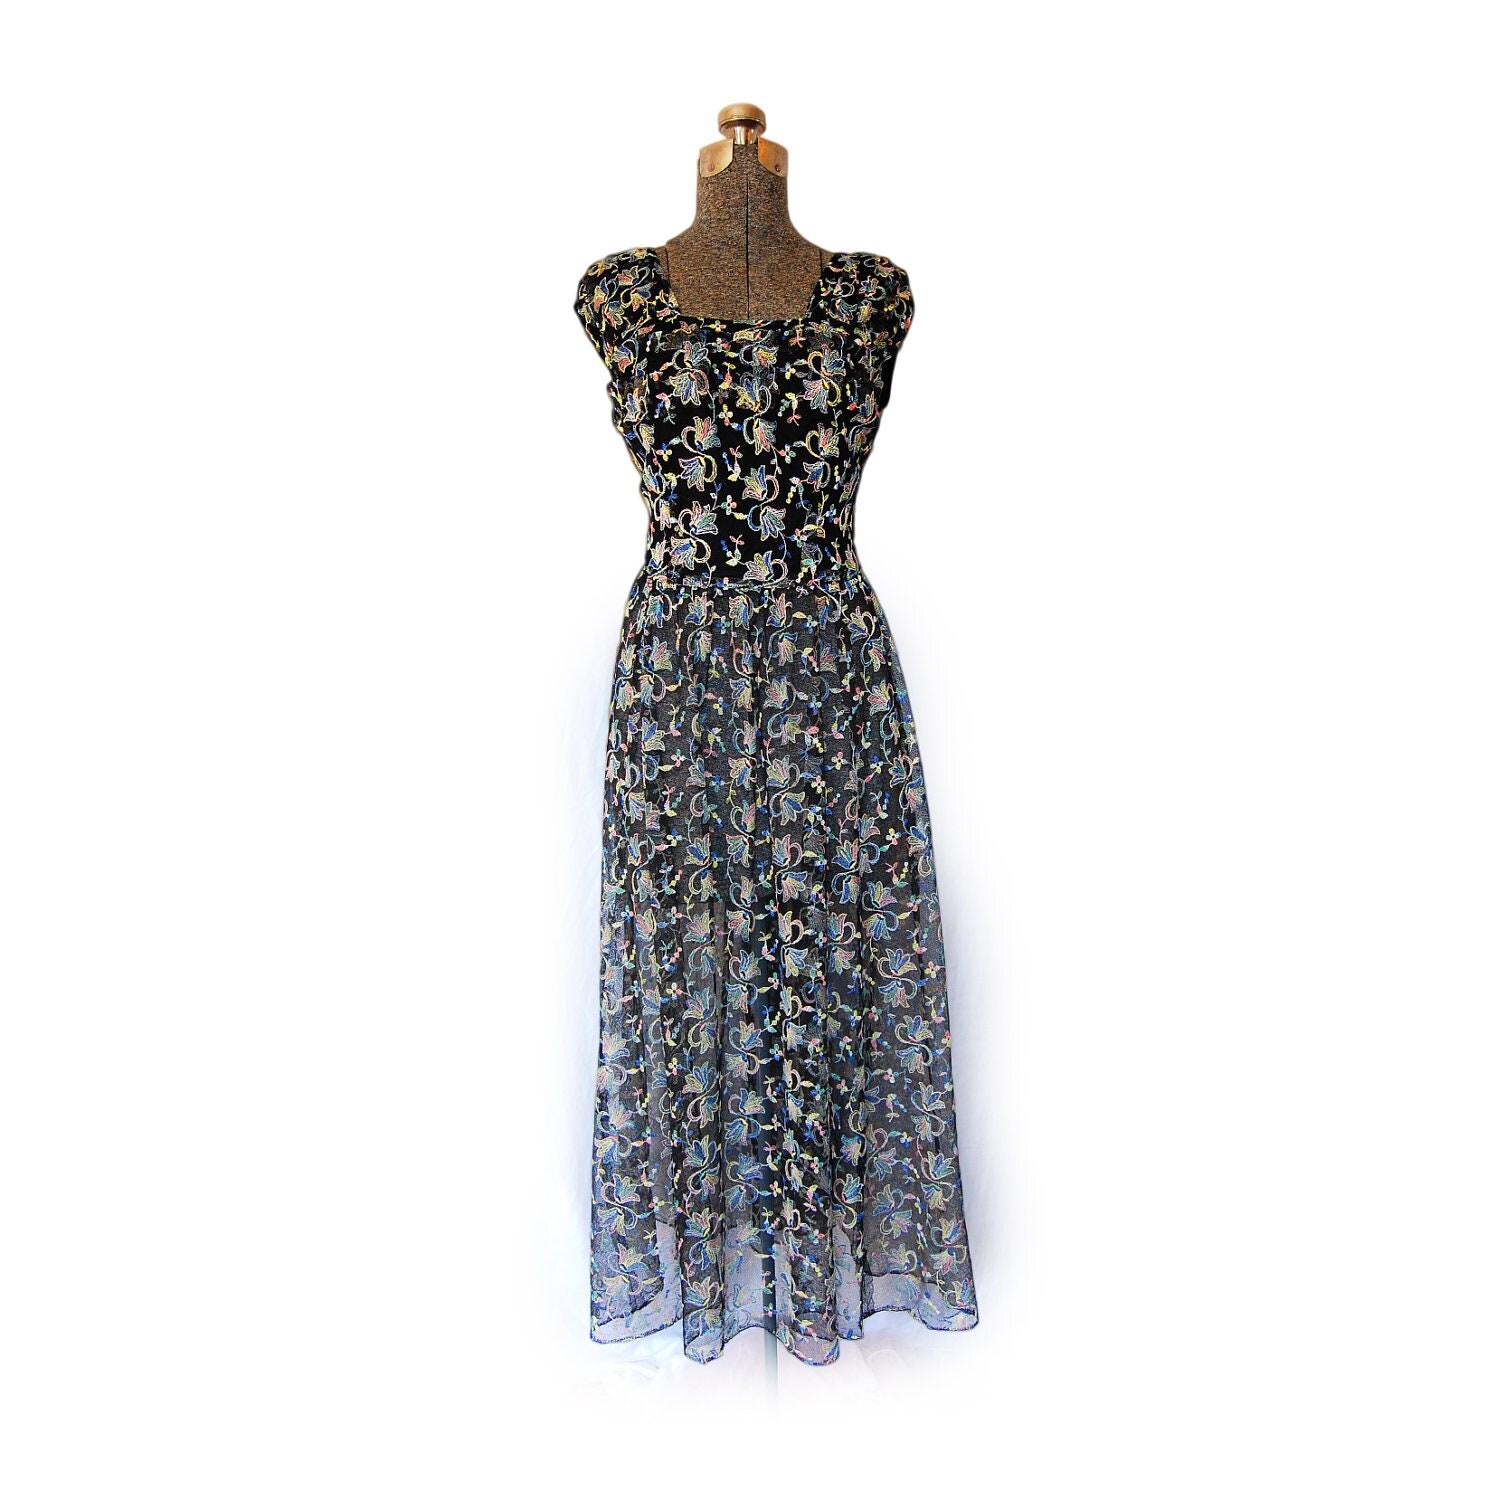 Vintage 1950s 50s Dress Sheer Embroidered by dejavintageboutique